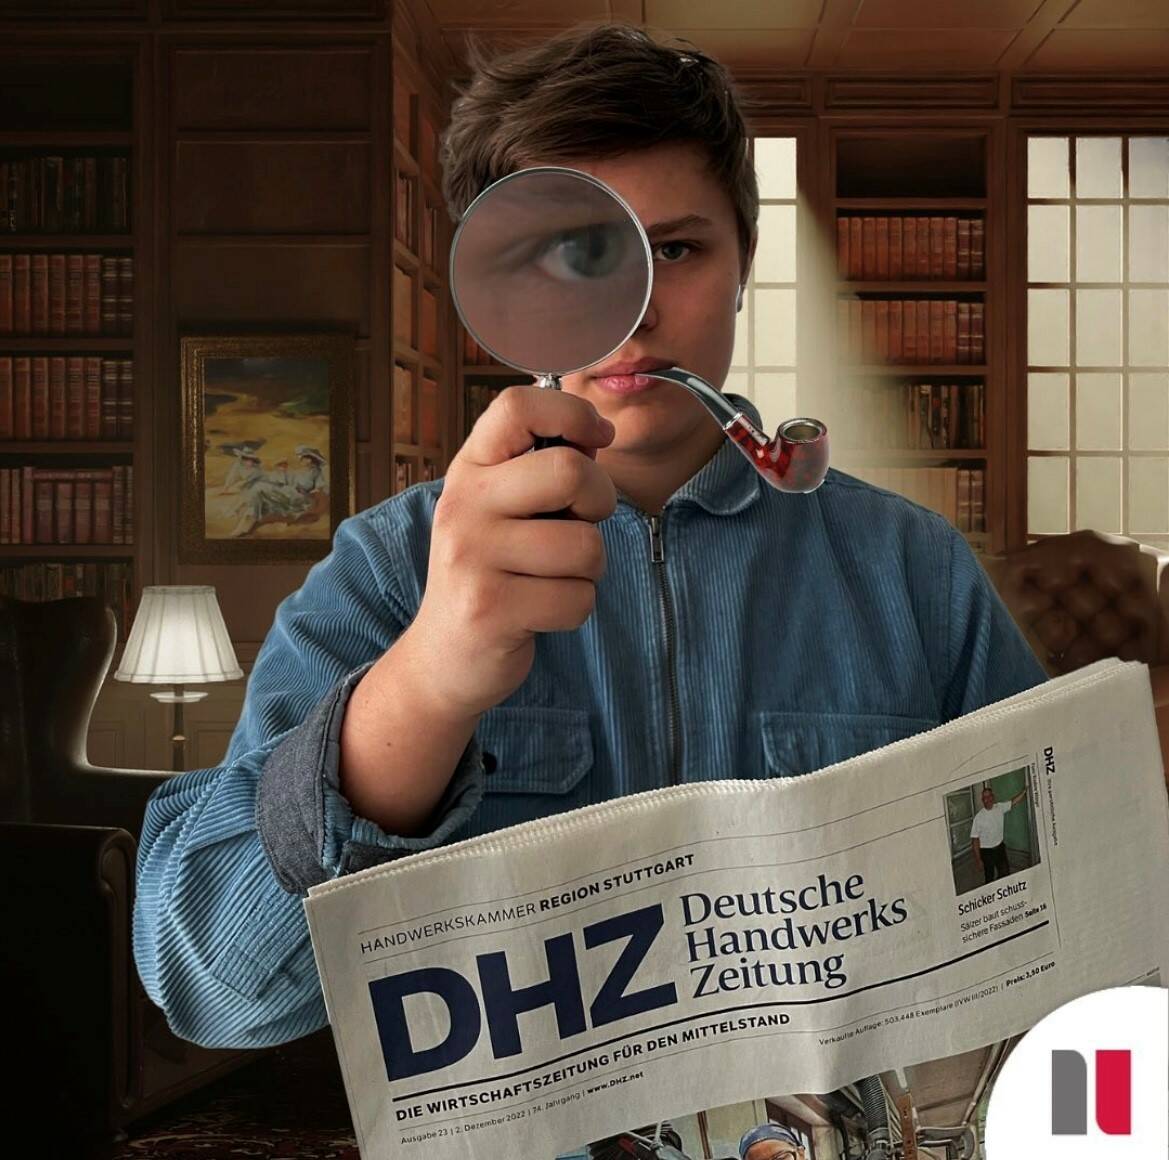 Deutsche Handwerks Zeitung